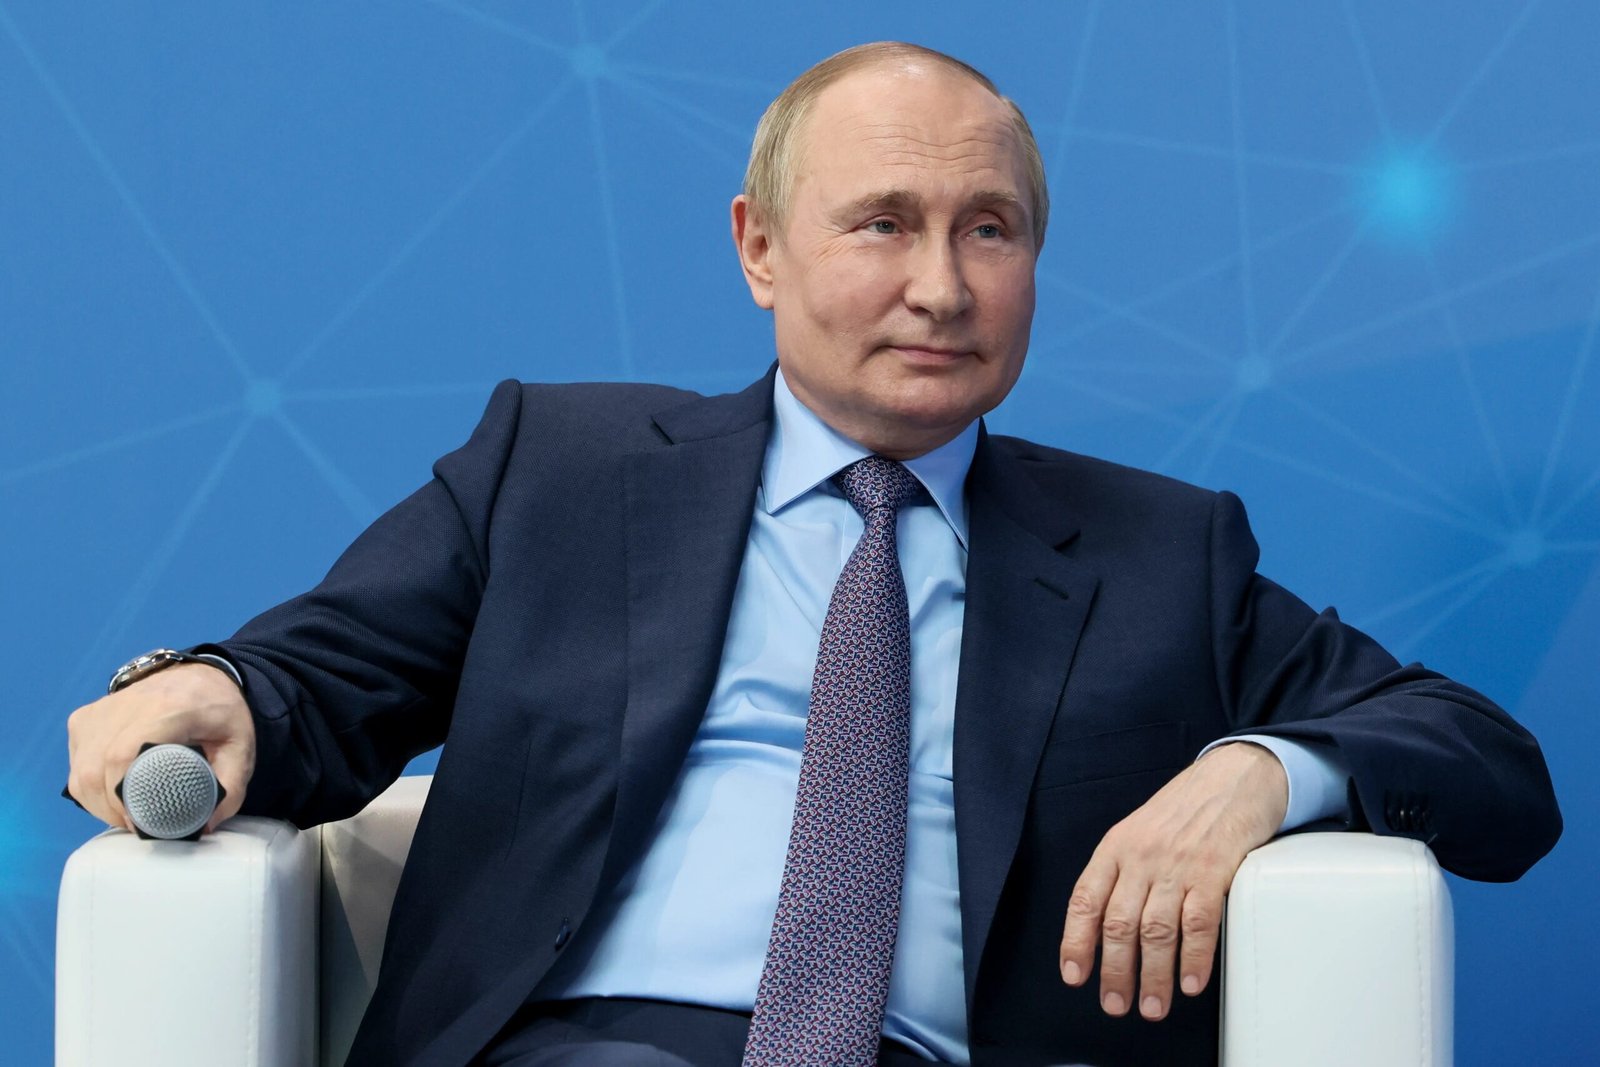 Putin health update: पुतिन के स्वास्थ्य को लेकर नई अटकलें: कार्डियक अरेस्ट